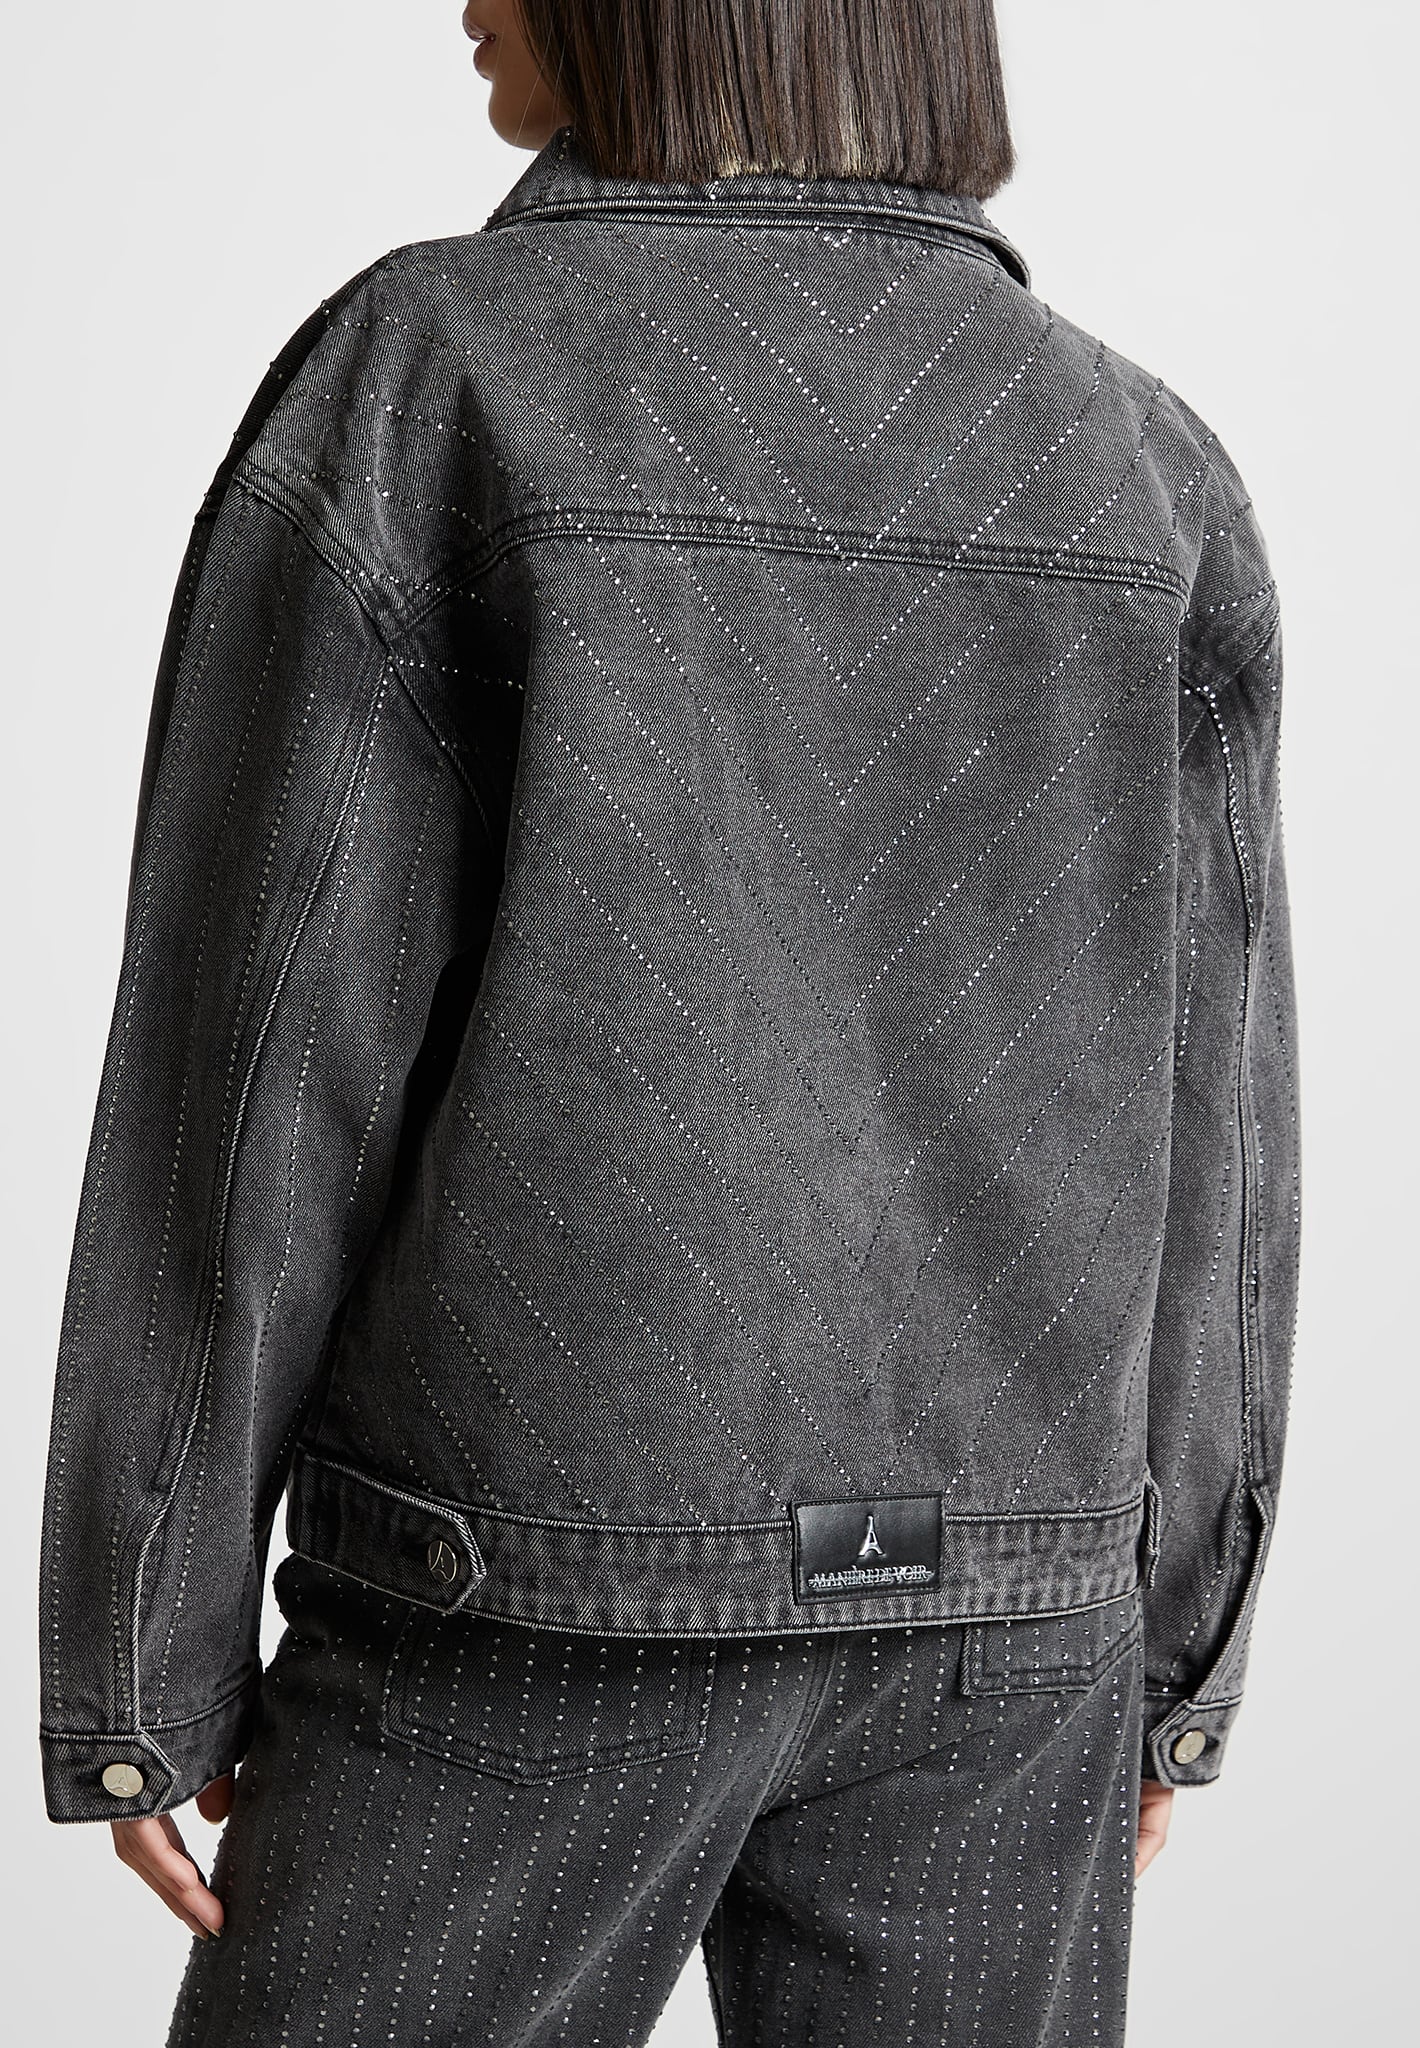 oversized-rhinestone-denim-jacket-washed-grey